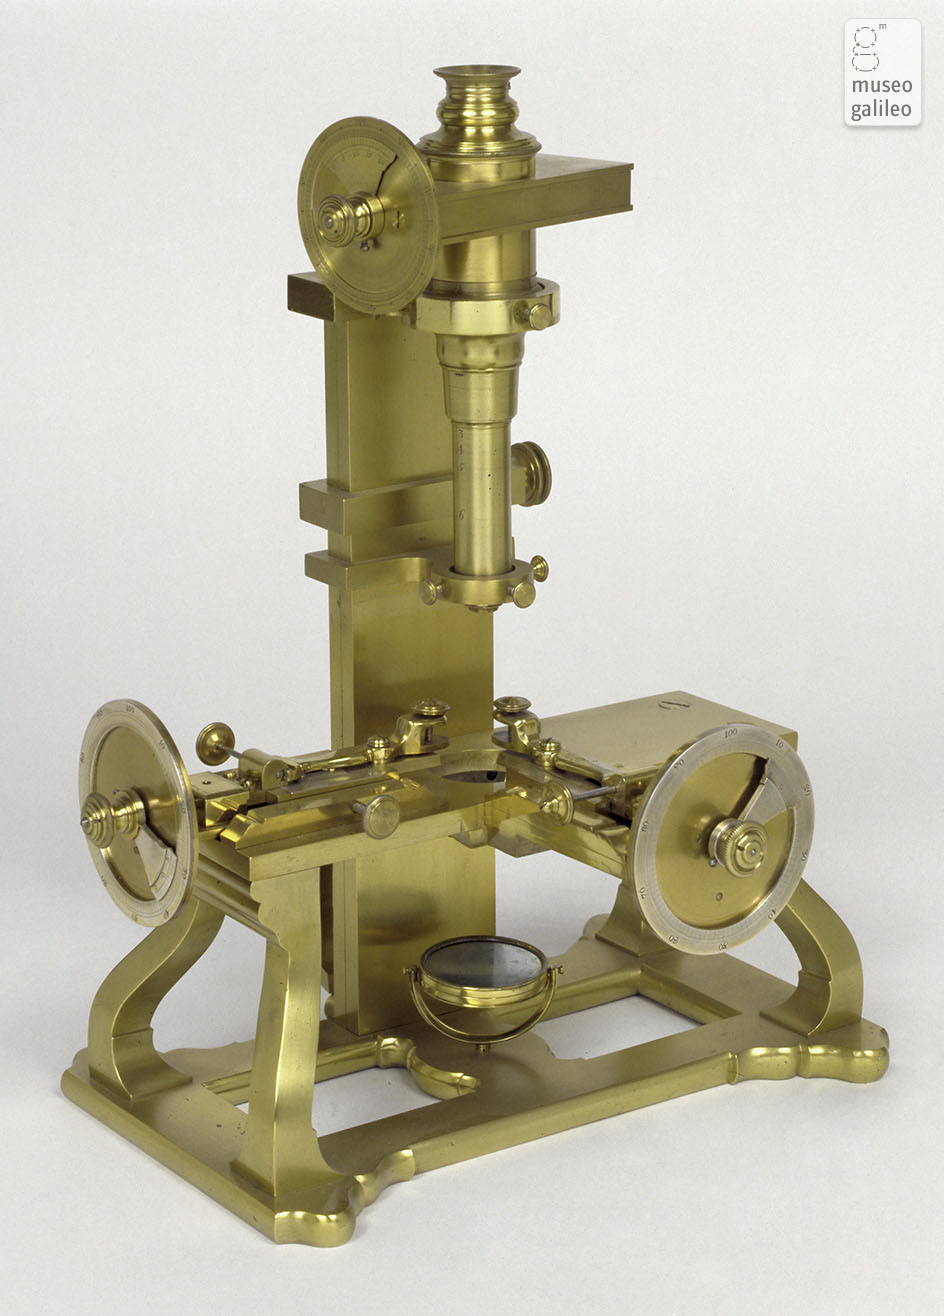 Duc de Chaulnes's microscope (Inv. 3202)